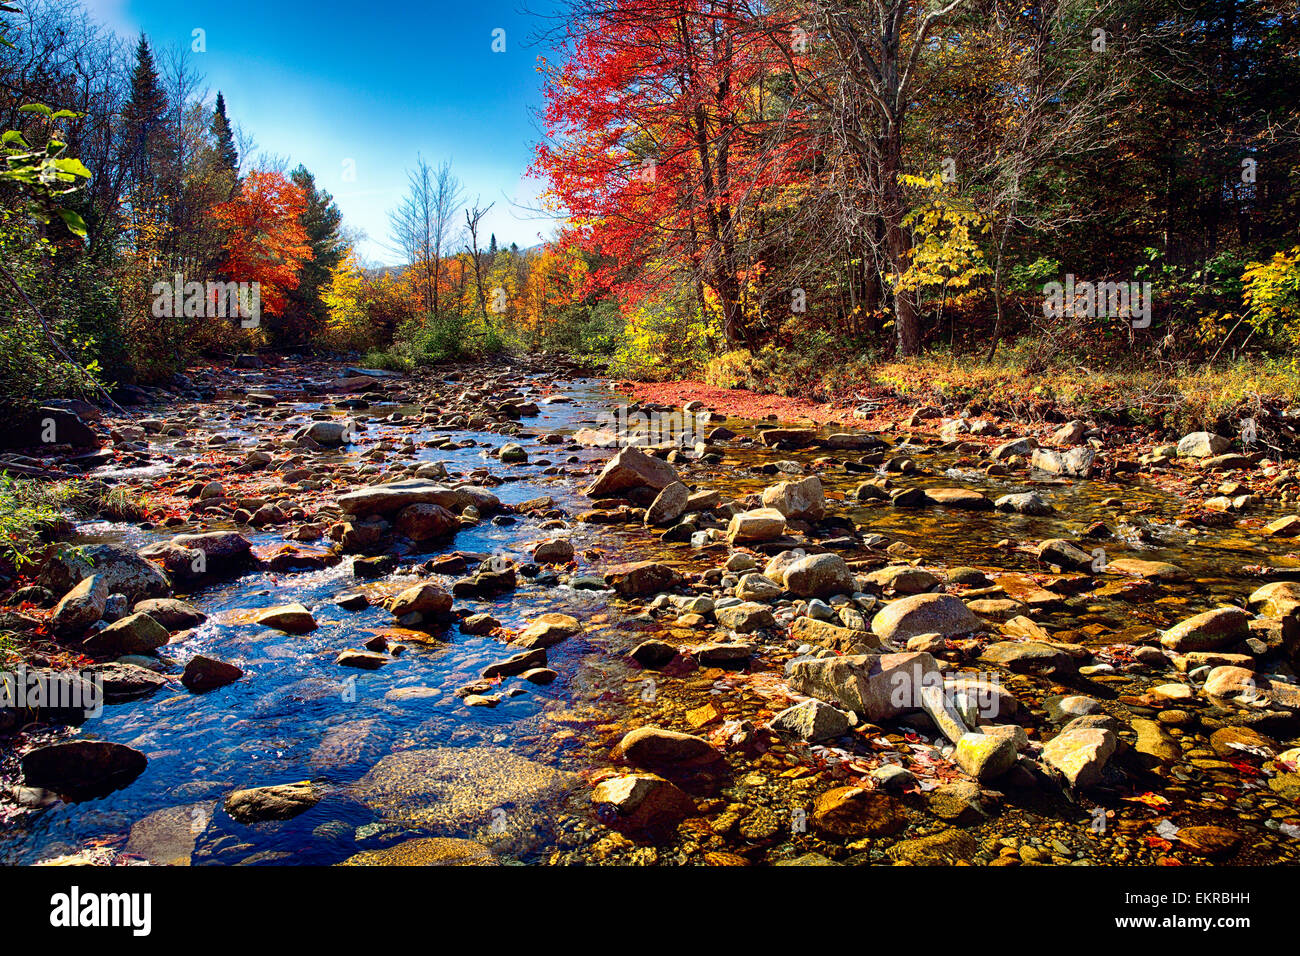 Ángulo de visión baja de un lecho rocoso con el follaje de otoño, Franconia, New Hampshire, EE.UU. Foto de stock